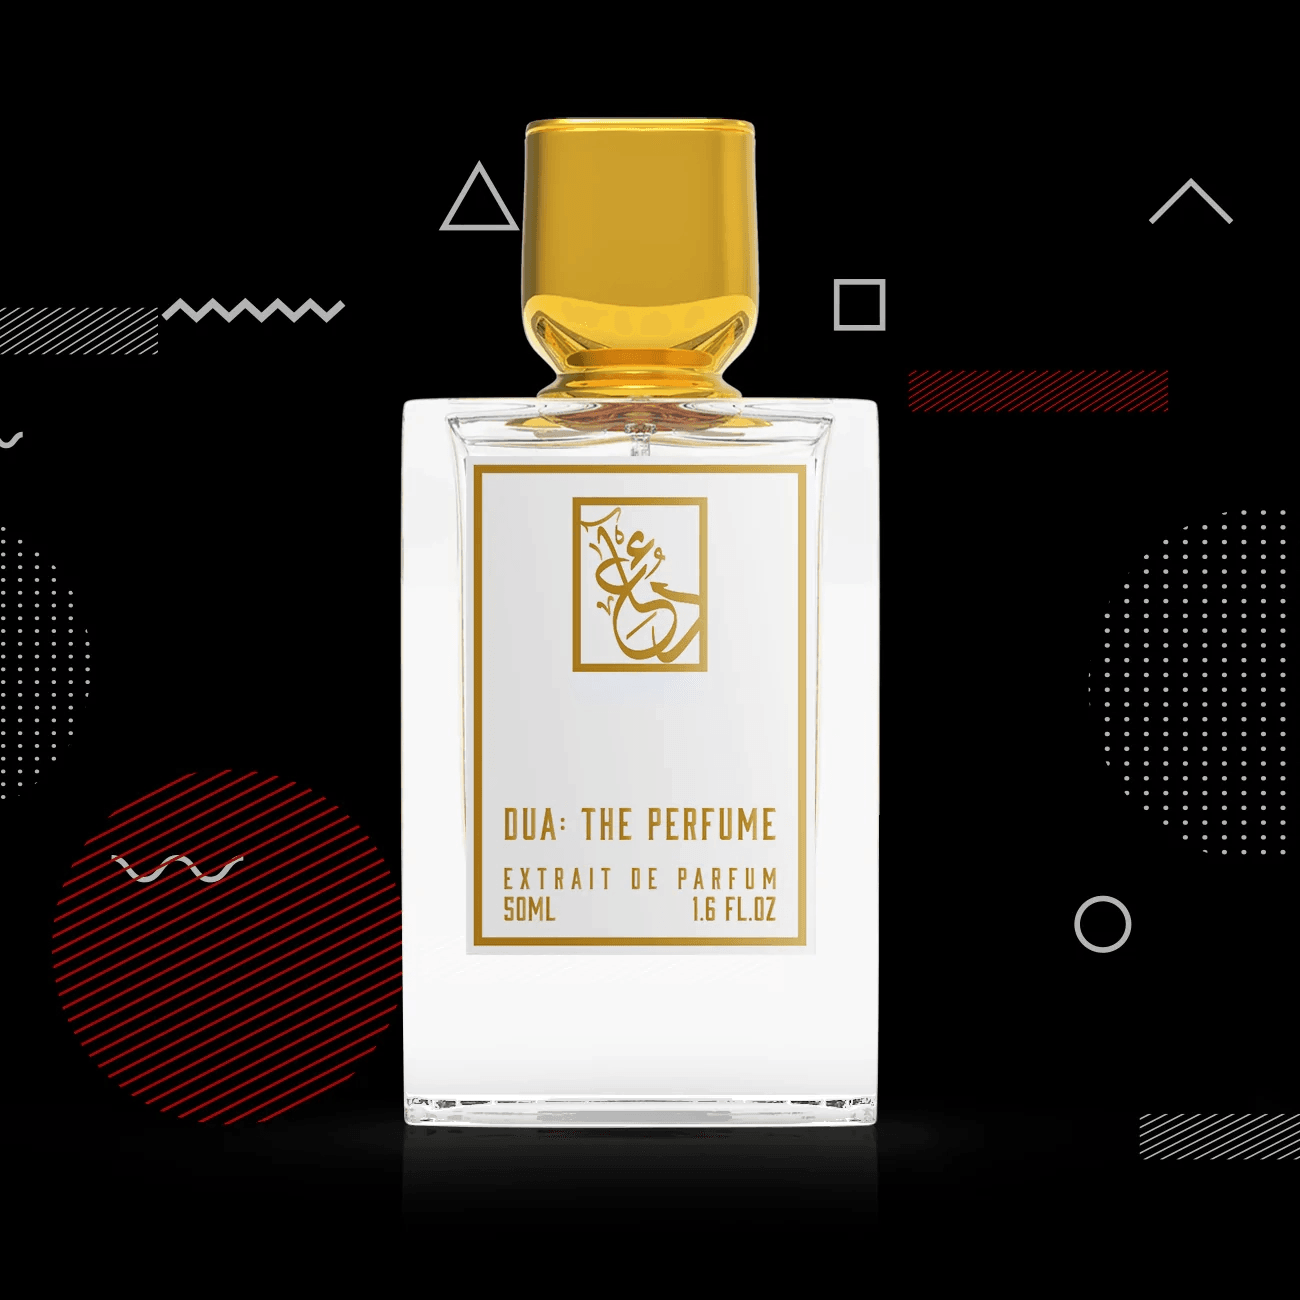 Dua: The Perfume